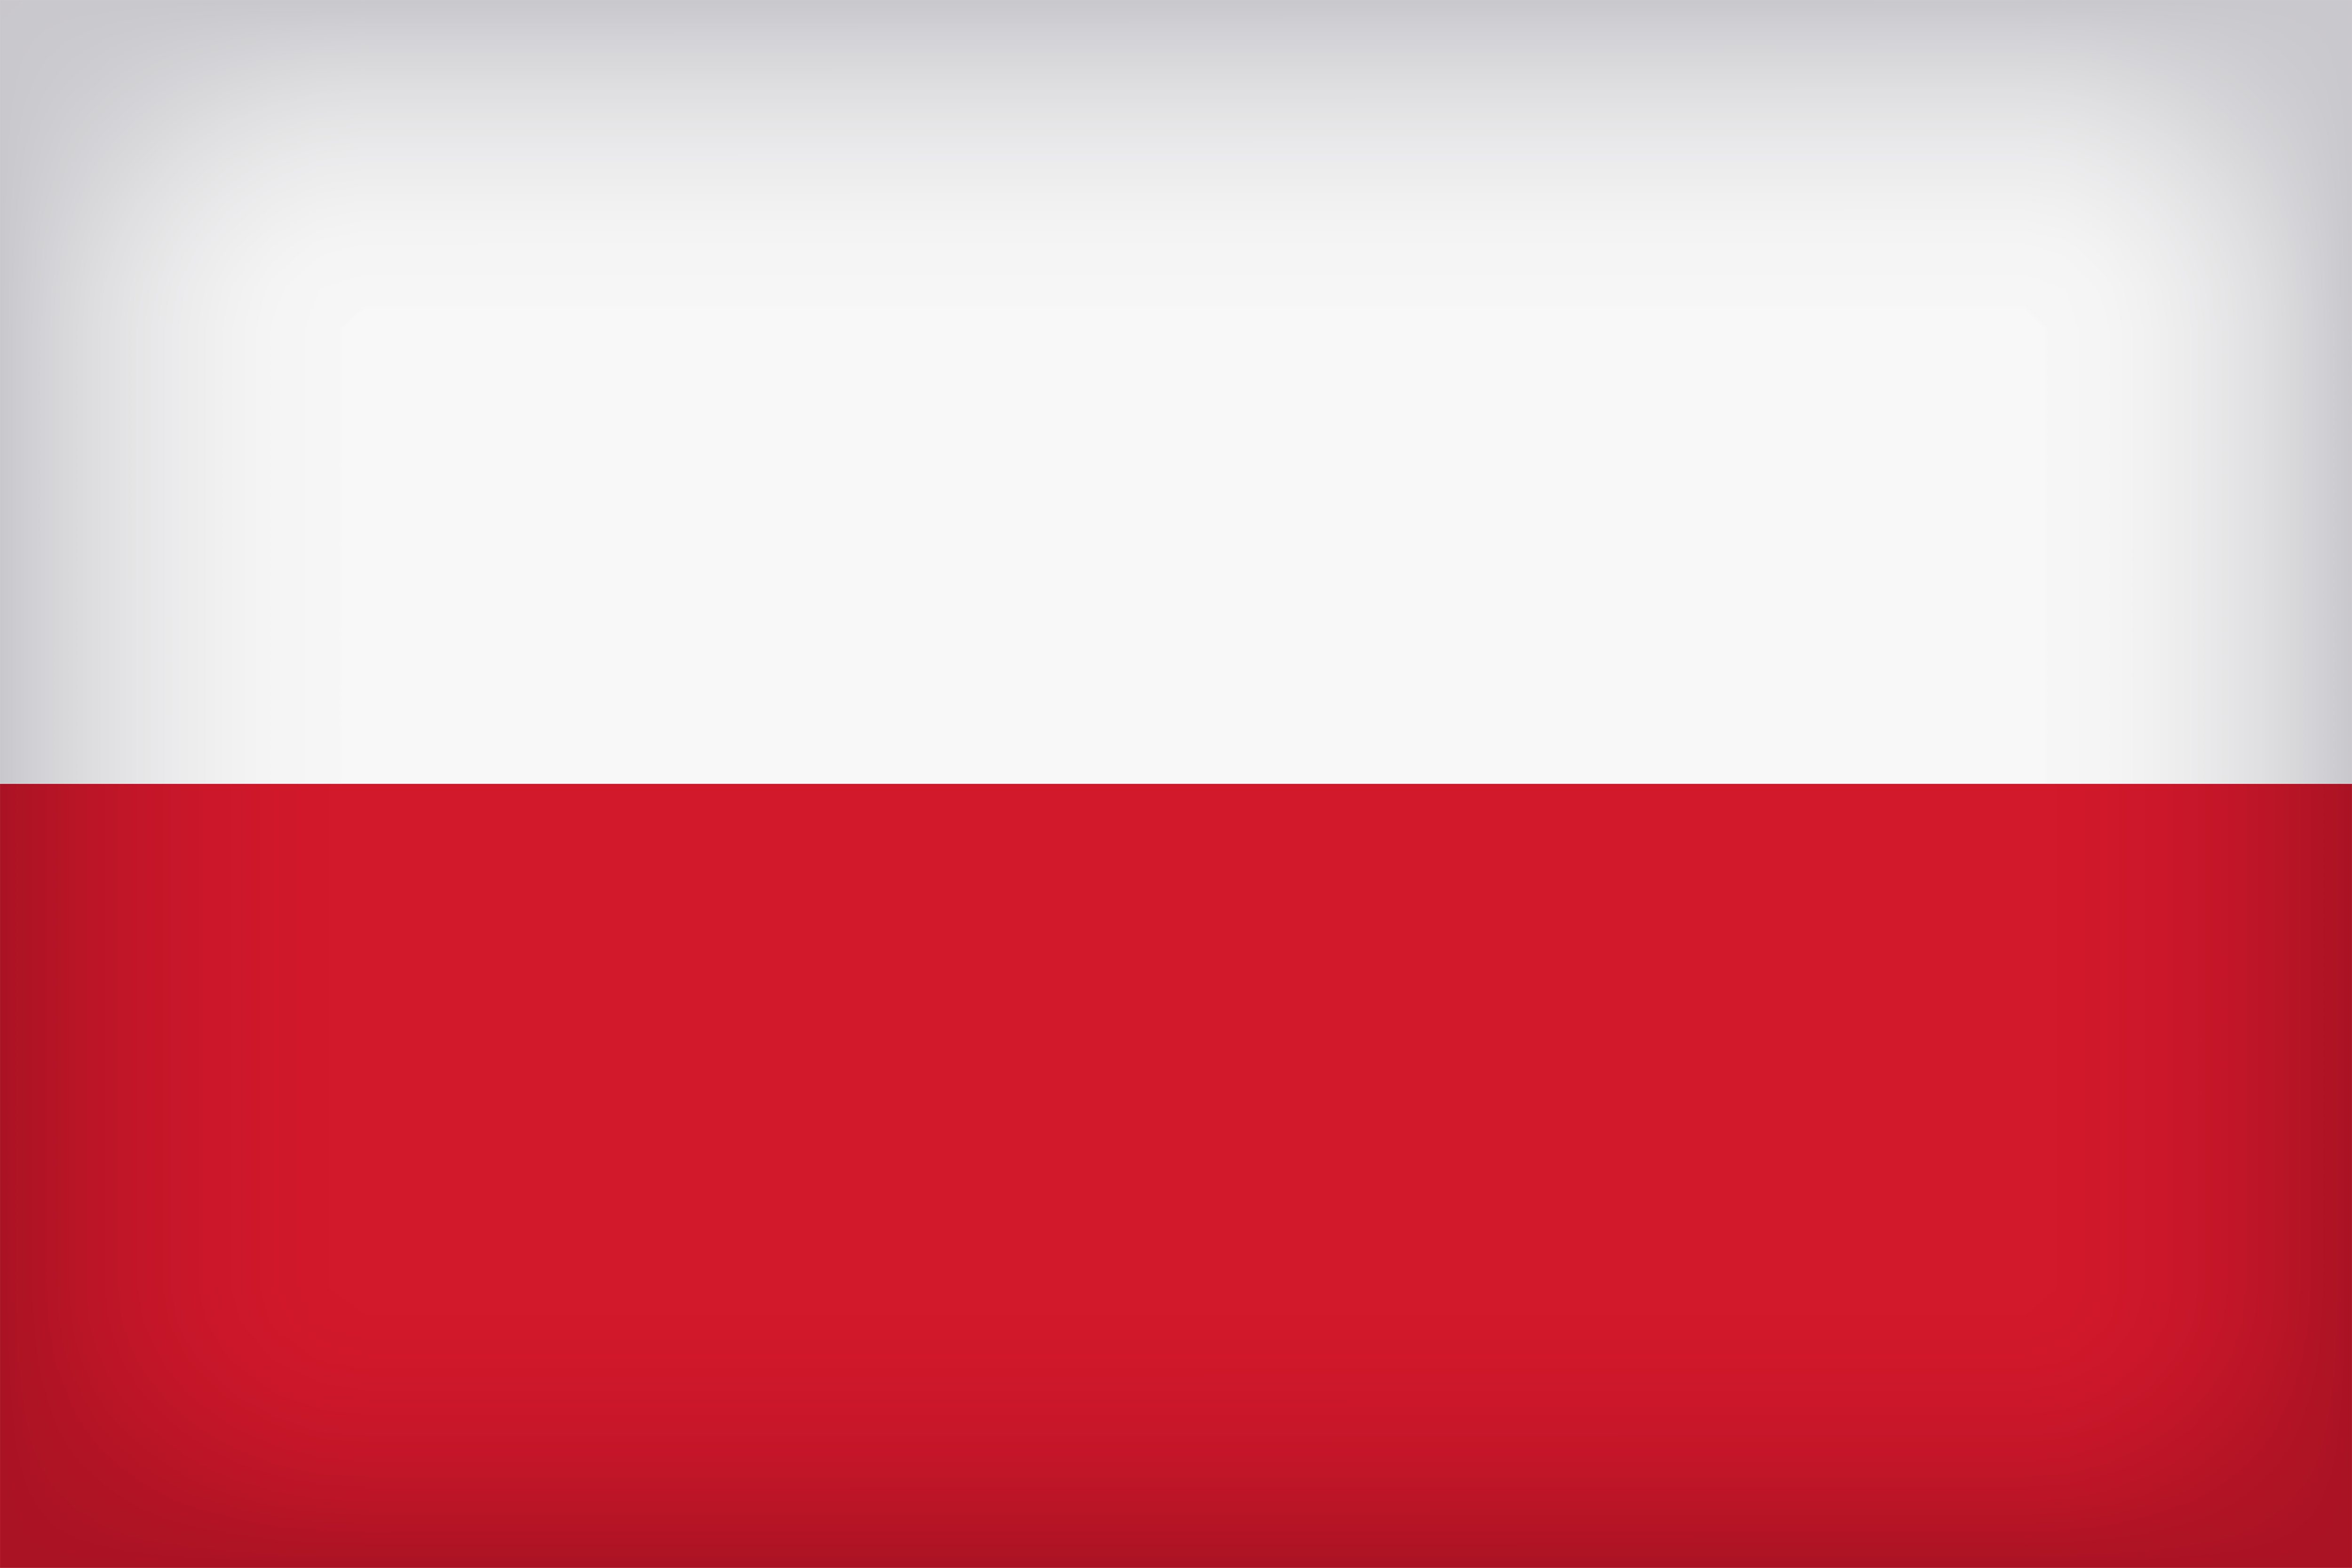 Poland Large Flag Quality Image